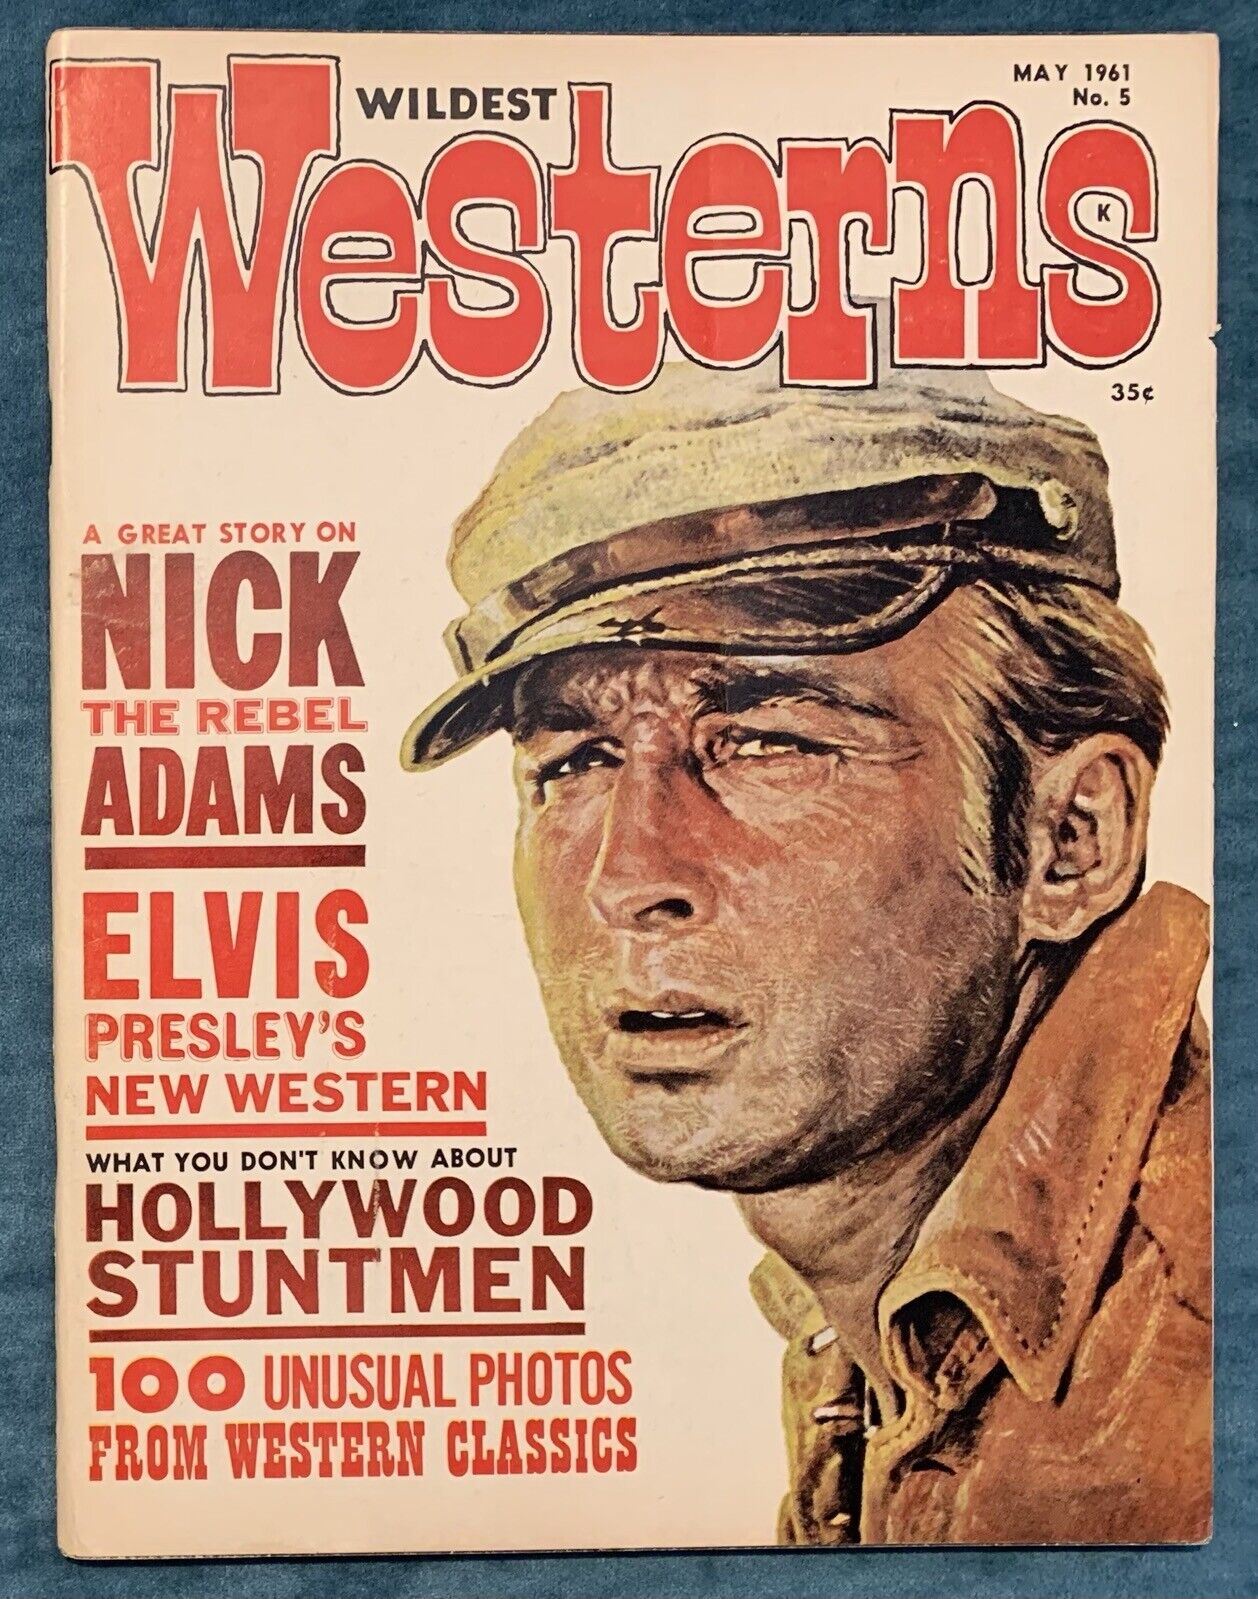 Wildest Westerns #5  May 1961  Warren Magazine  